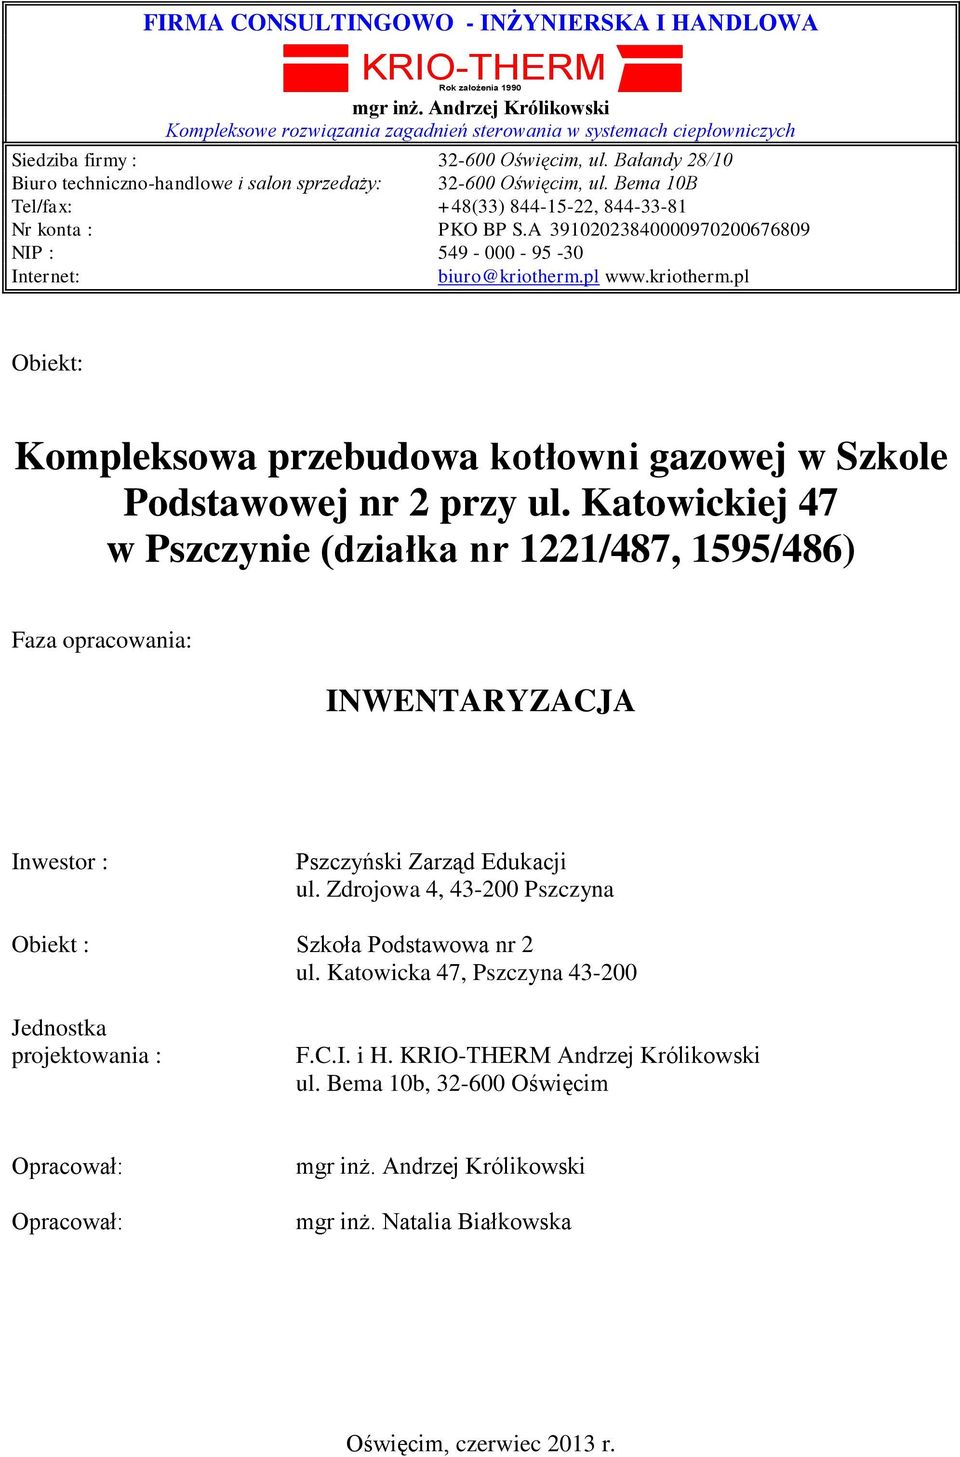 Bałandy 28/10 Biuro techniczno-handlowe i salon sprzedaży: 32-600 Oświęcim, ul. Bema 10B Tel/fax: +48(33) 844-15-22, 844-33-81 Nr konta : PKO BP S.